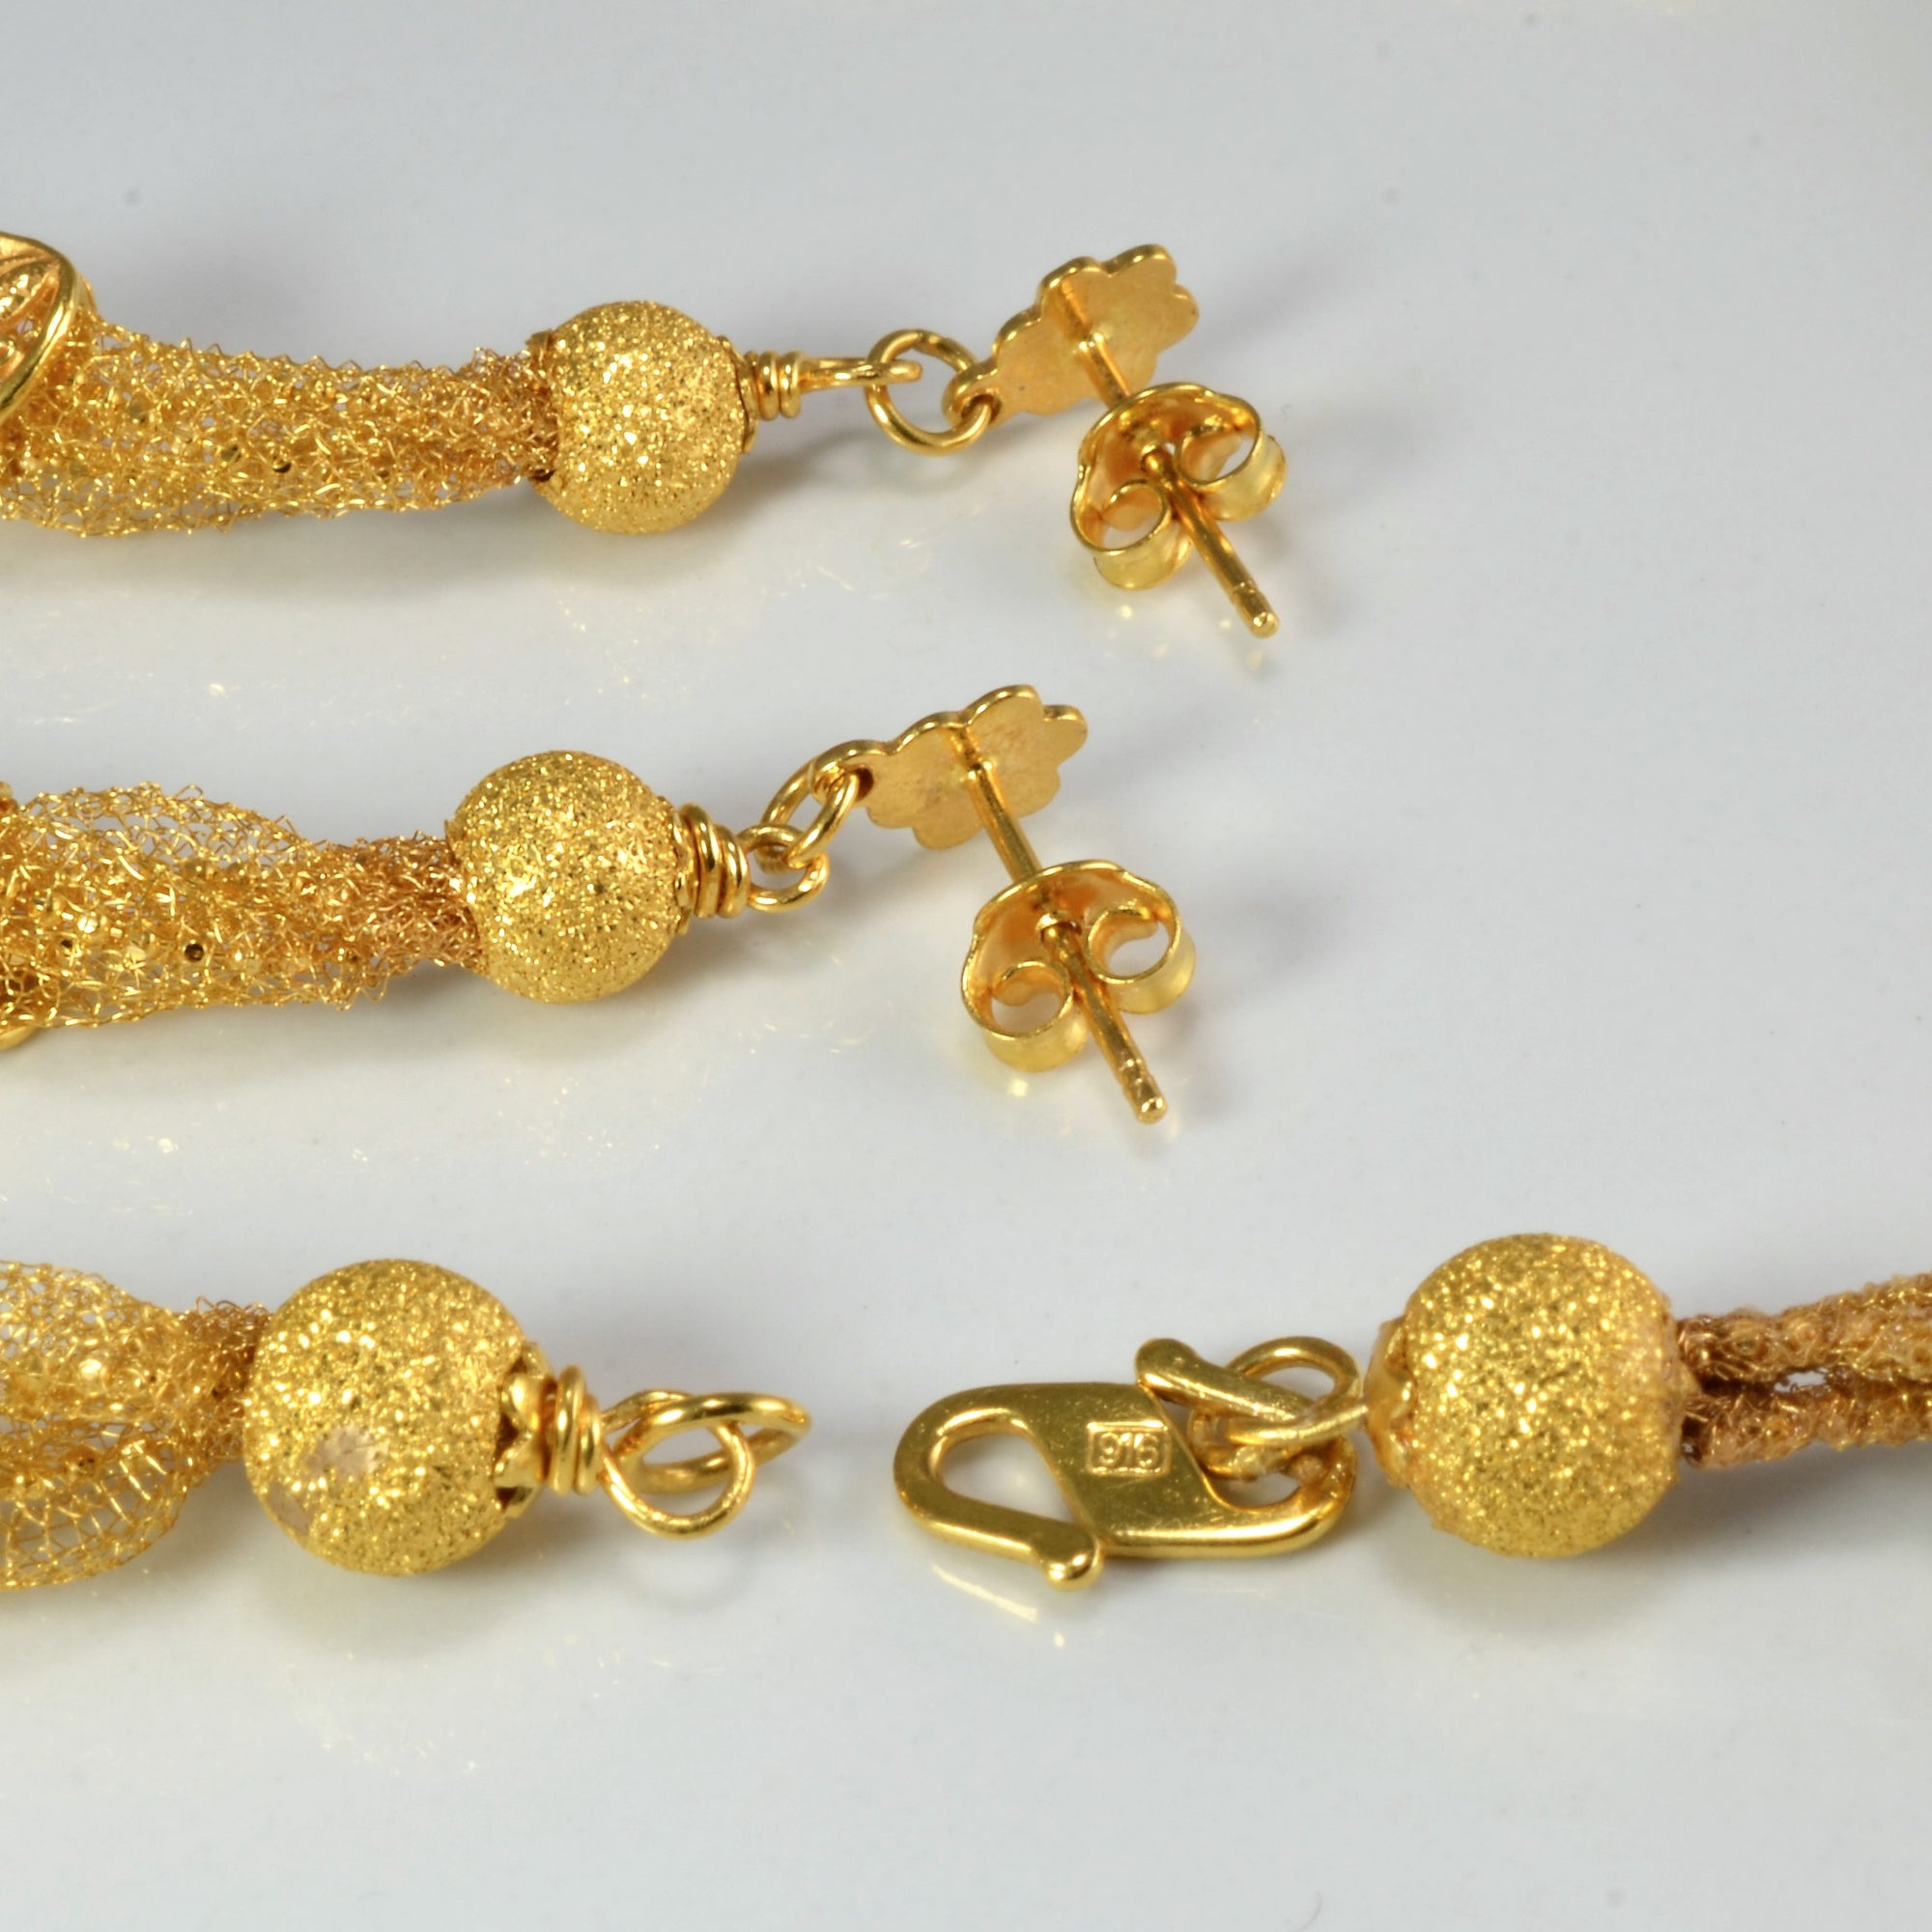 Woven Net Delicate 22K Gold Necklace & Earrings Set